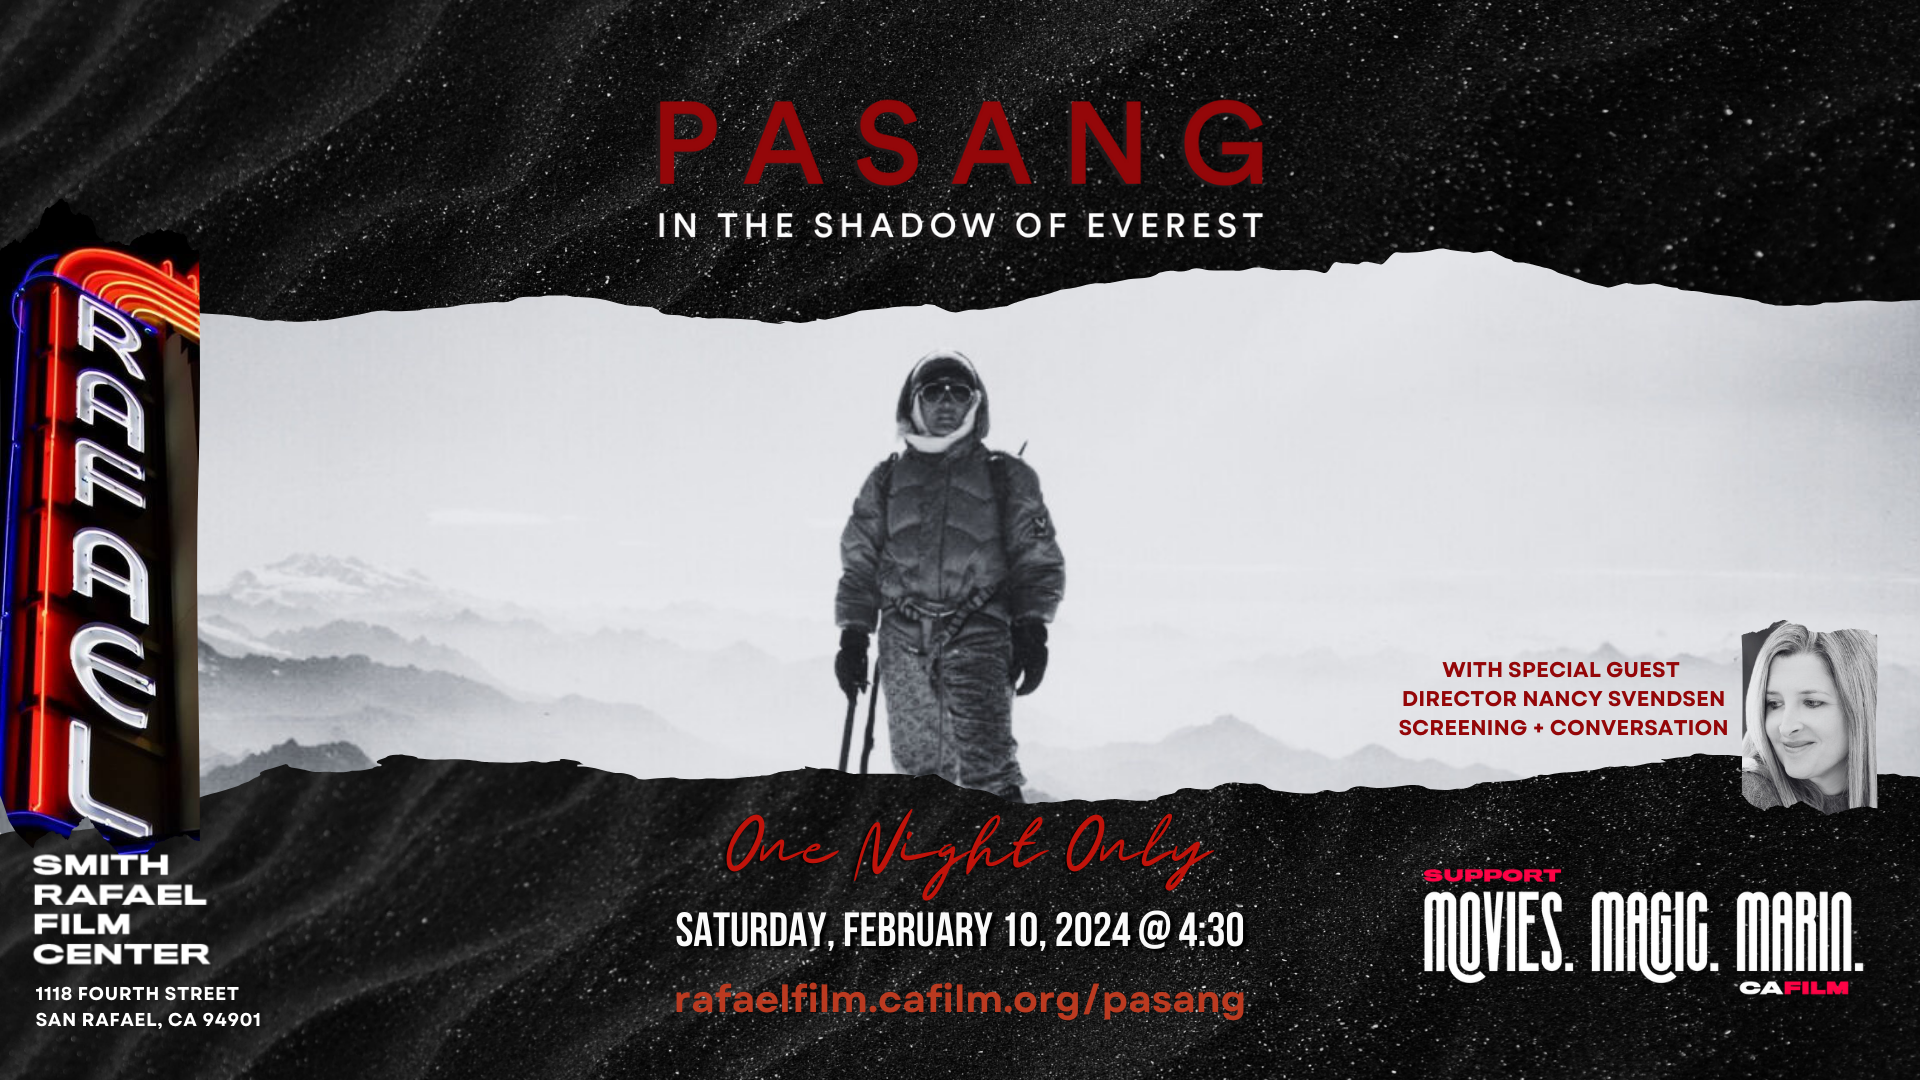 PASANG screens at Smith Rafael Film Center, Feb 10, 2024 at 4:30PM